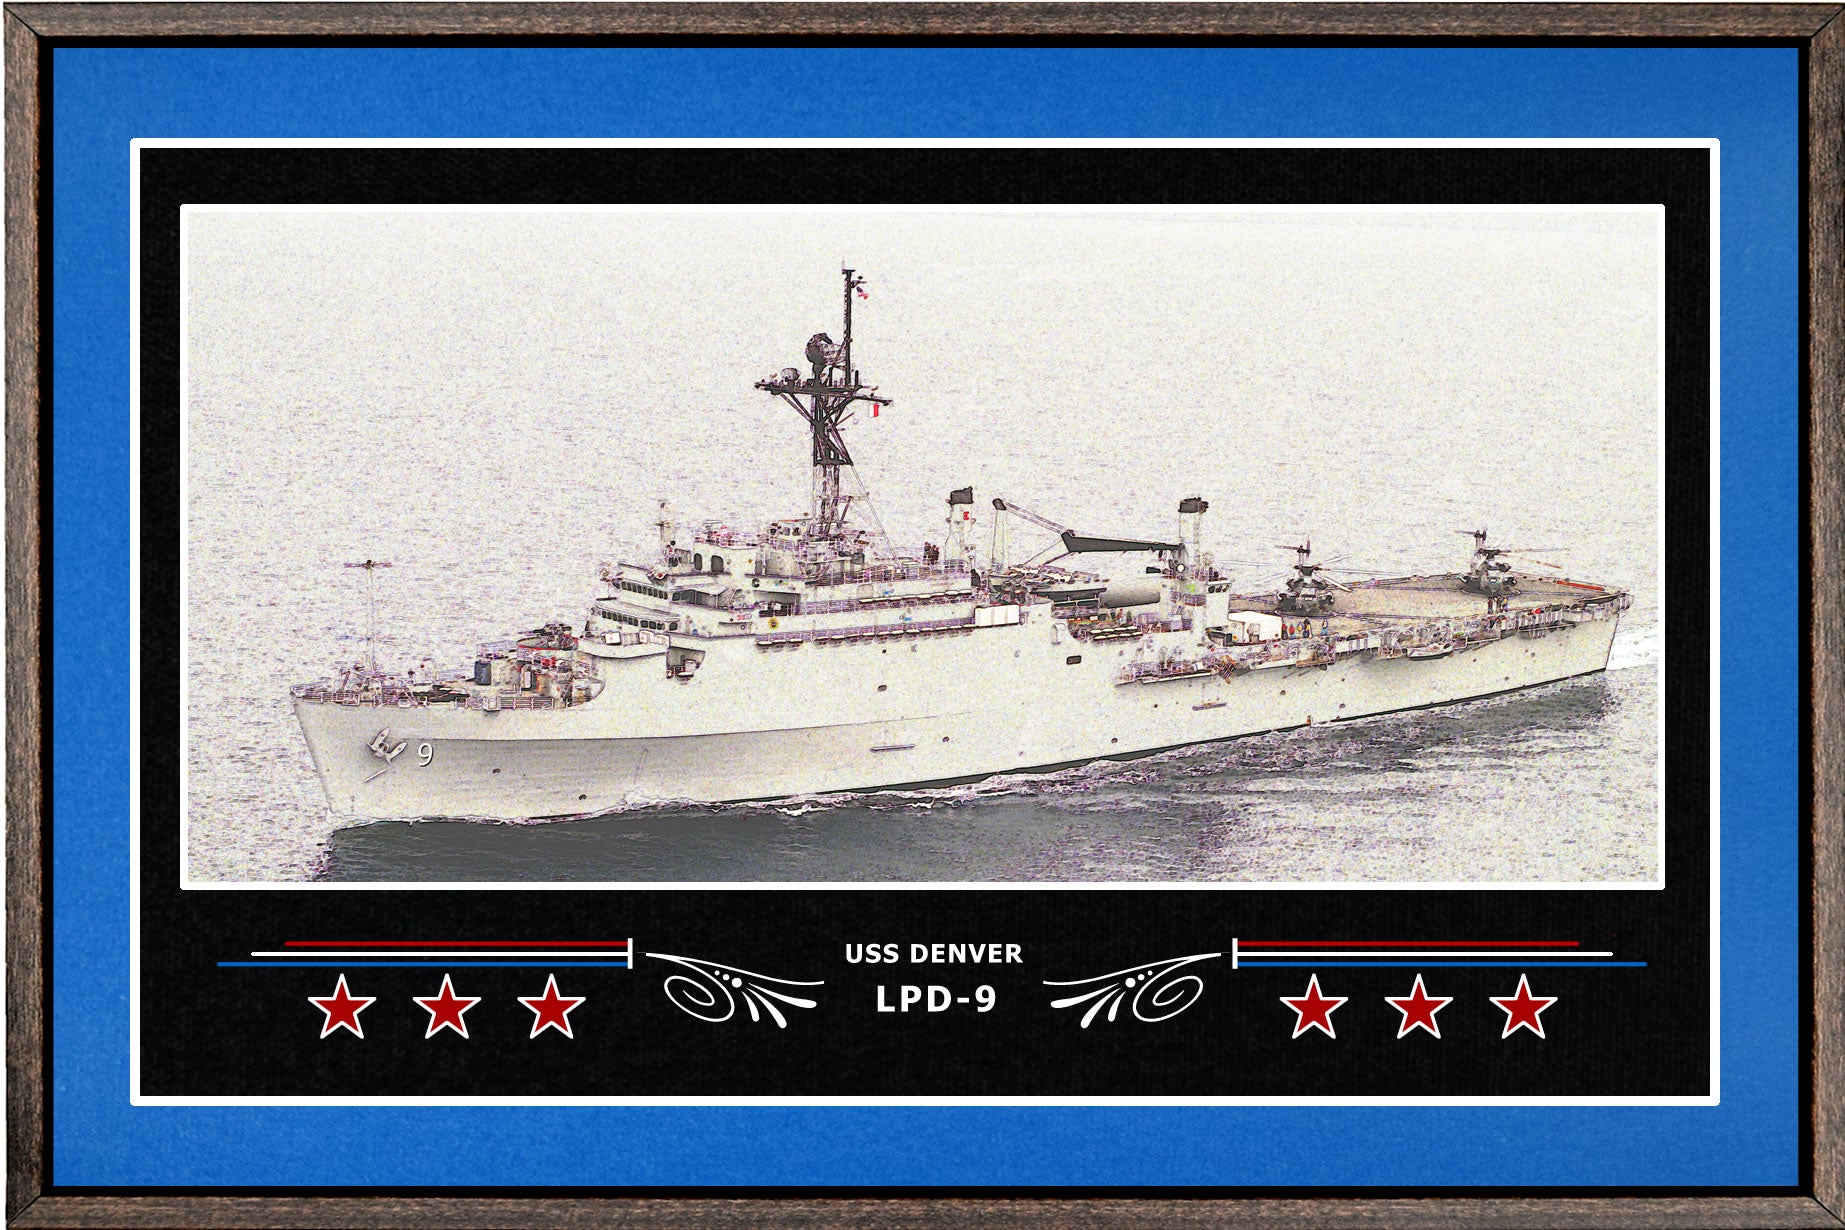 USS DENVER LPD 9 BOX FRAMED CANVAS ART BLUE